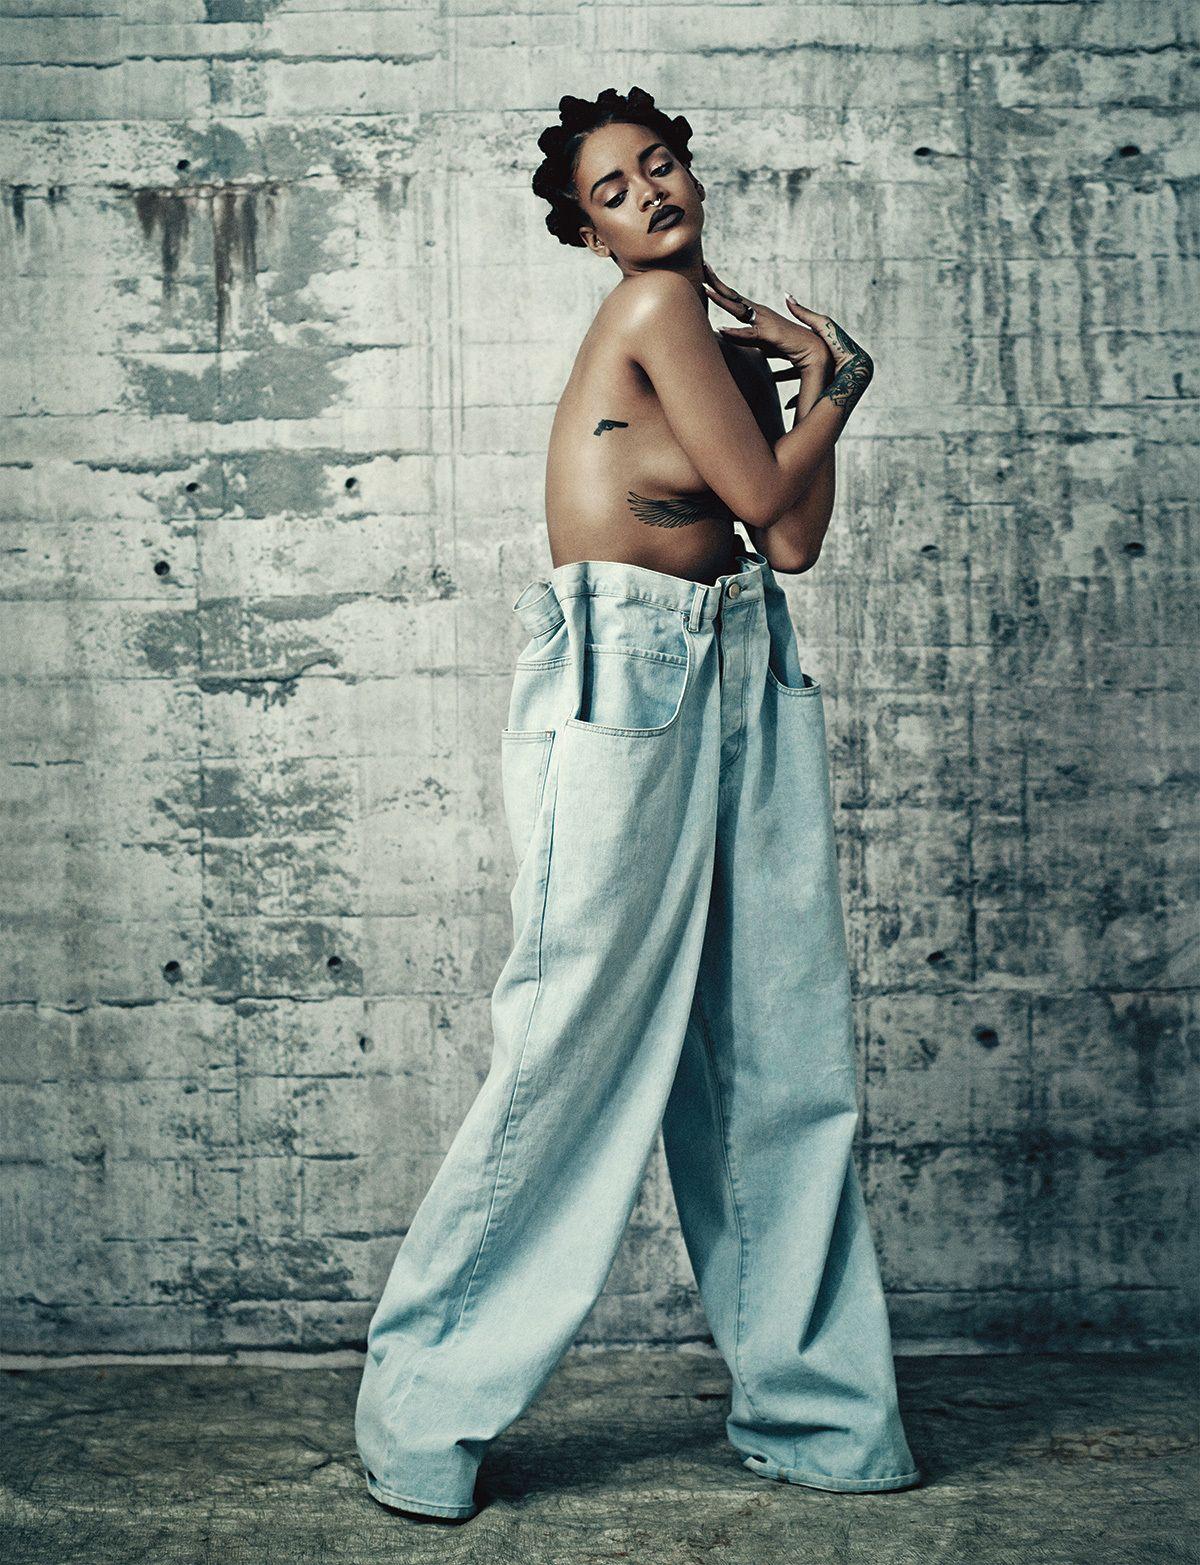 Photo №64472 Rihanna.